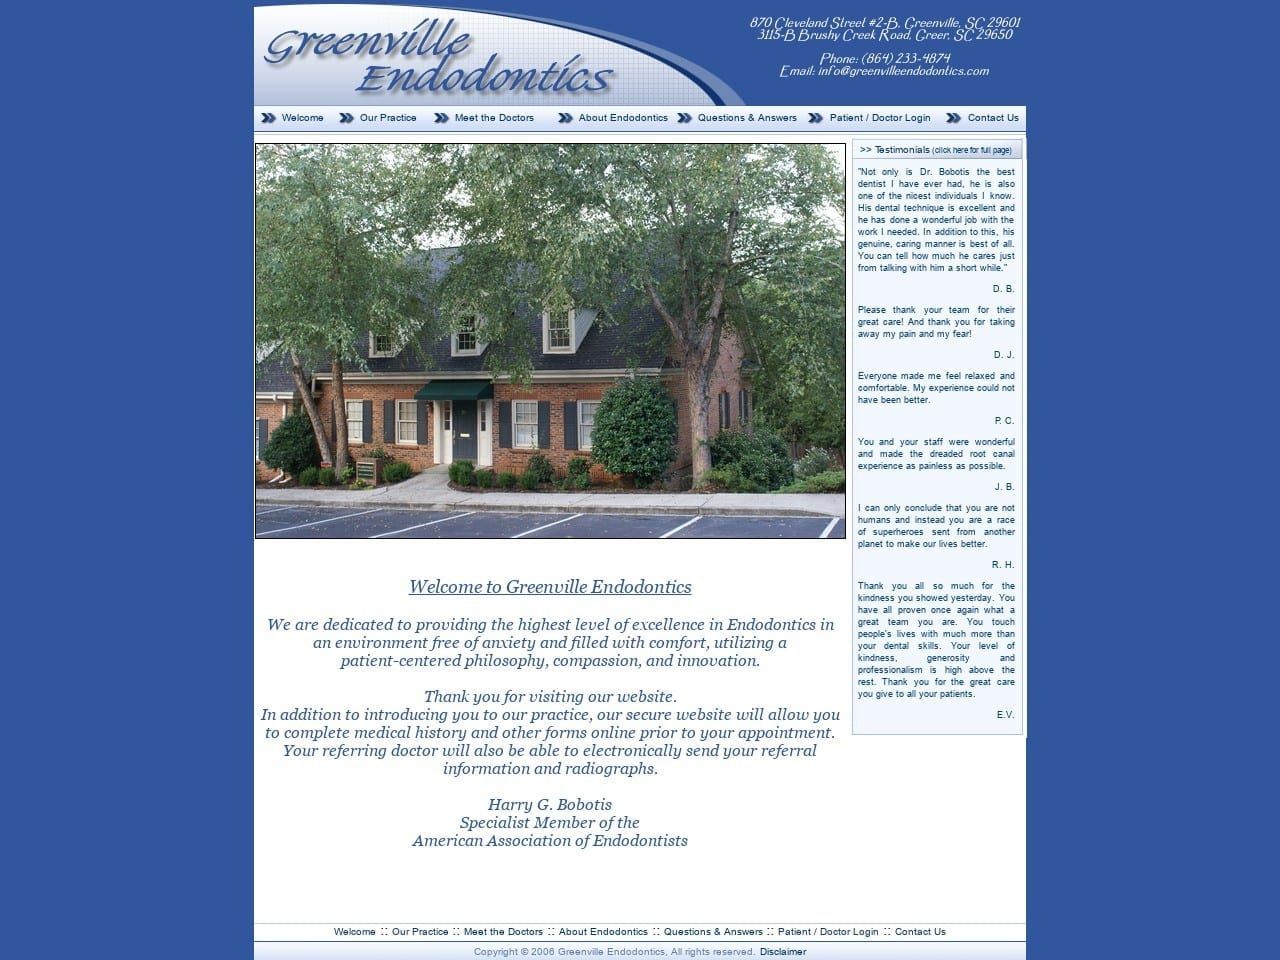 Greenville Endodontic Associates Website Screenshot from greenvilleendodontics.com